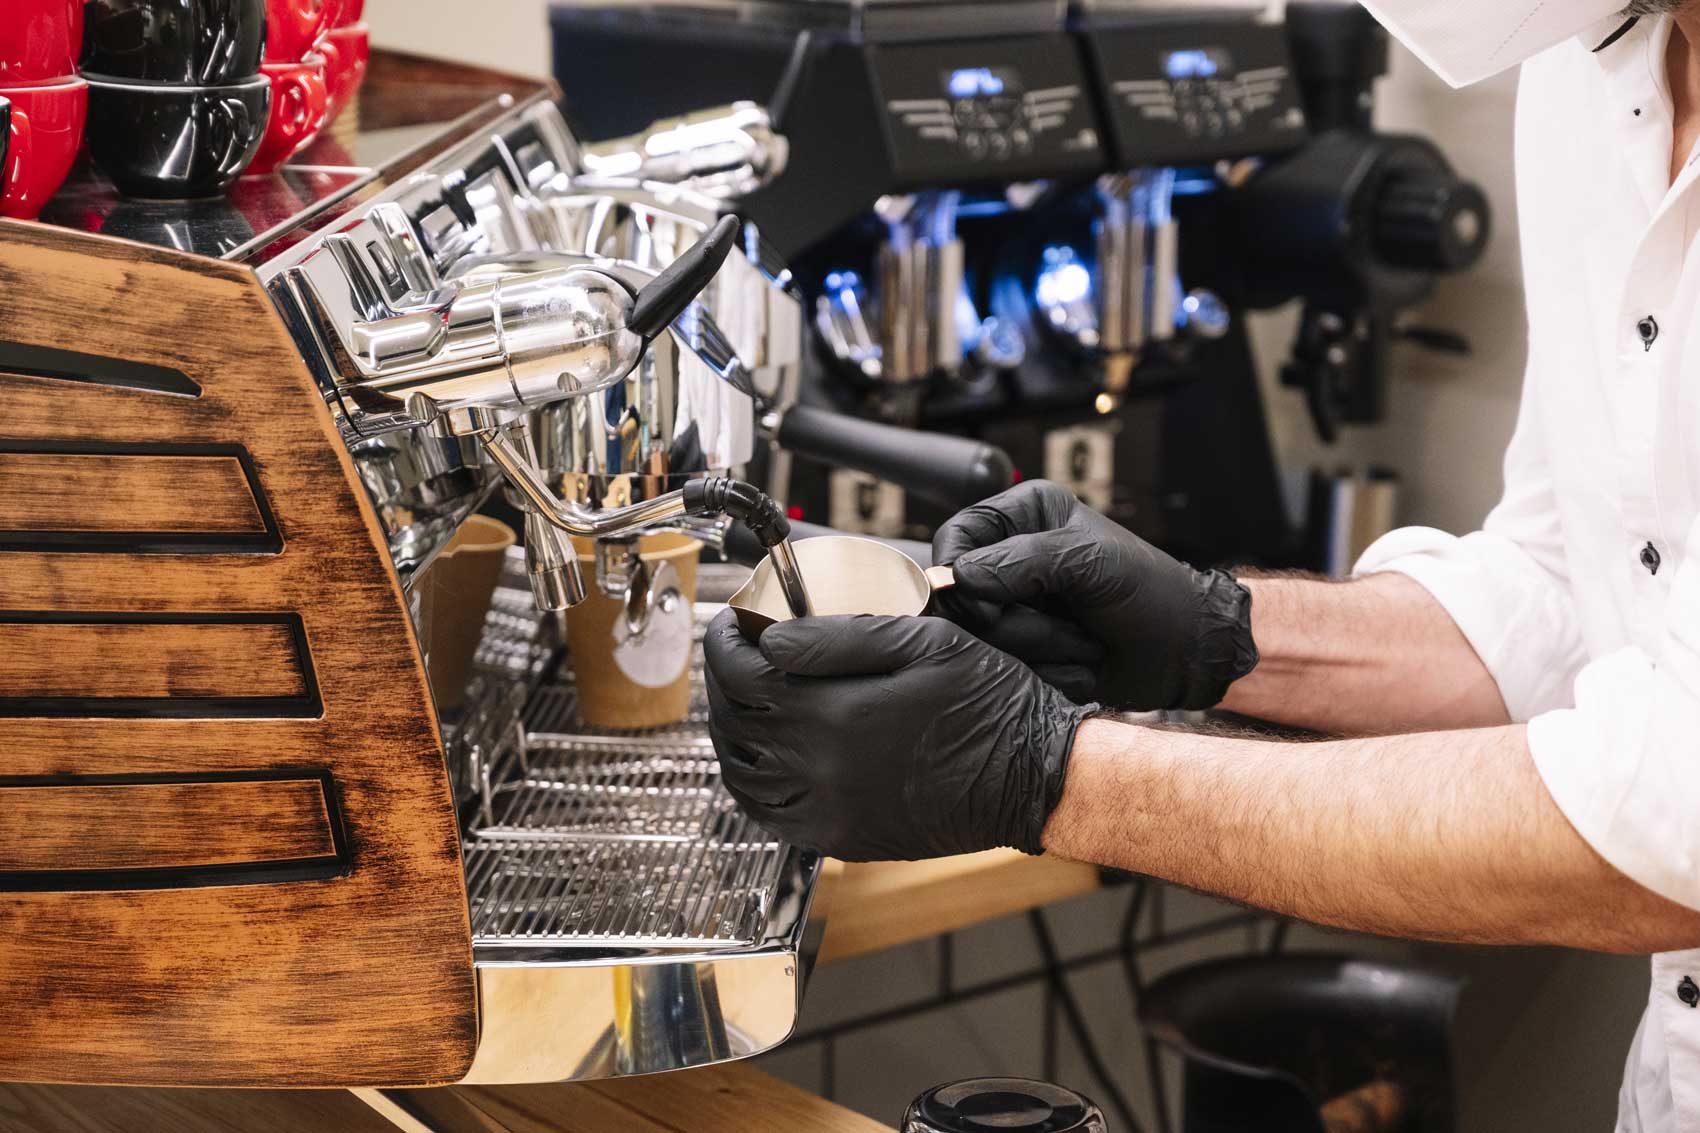 Barista pri kuhanju kave uporablja črne rokavice iz nitrila